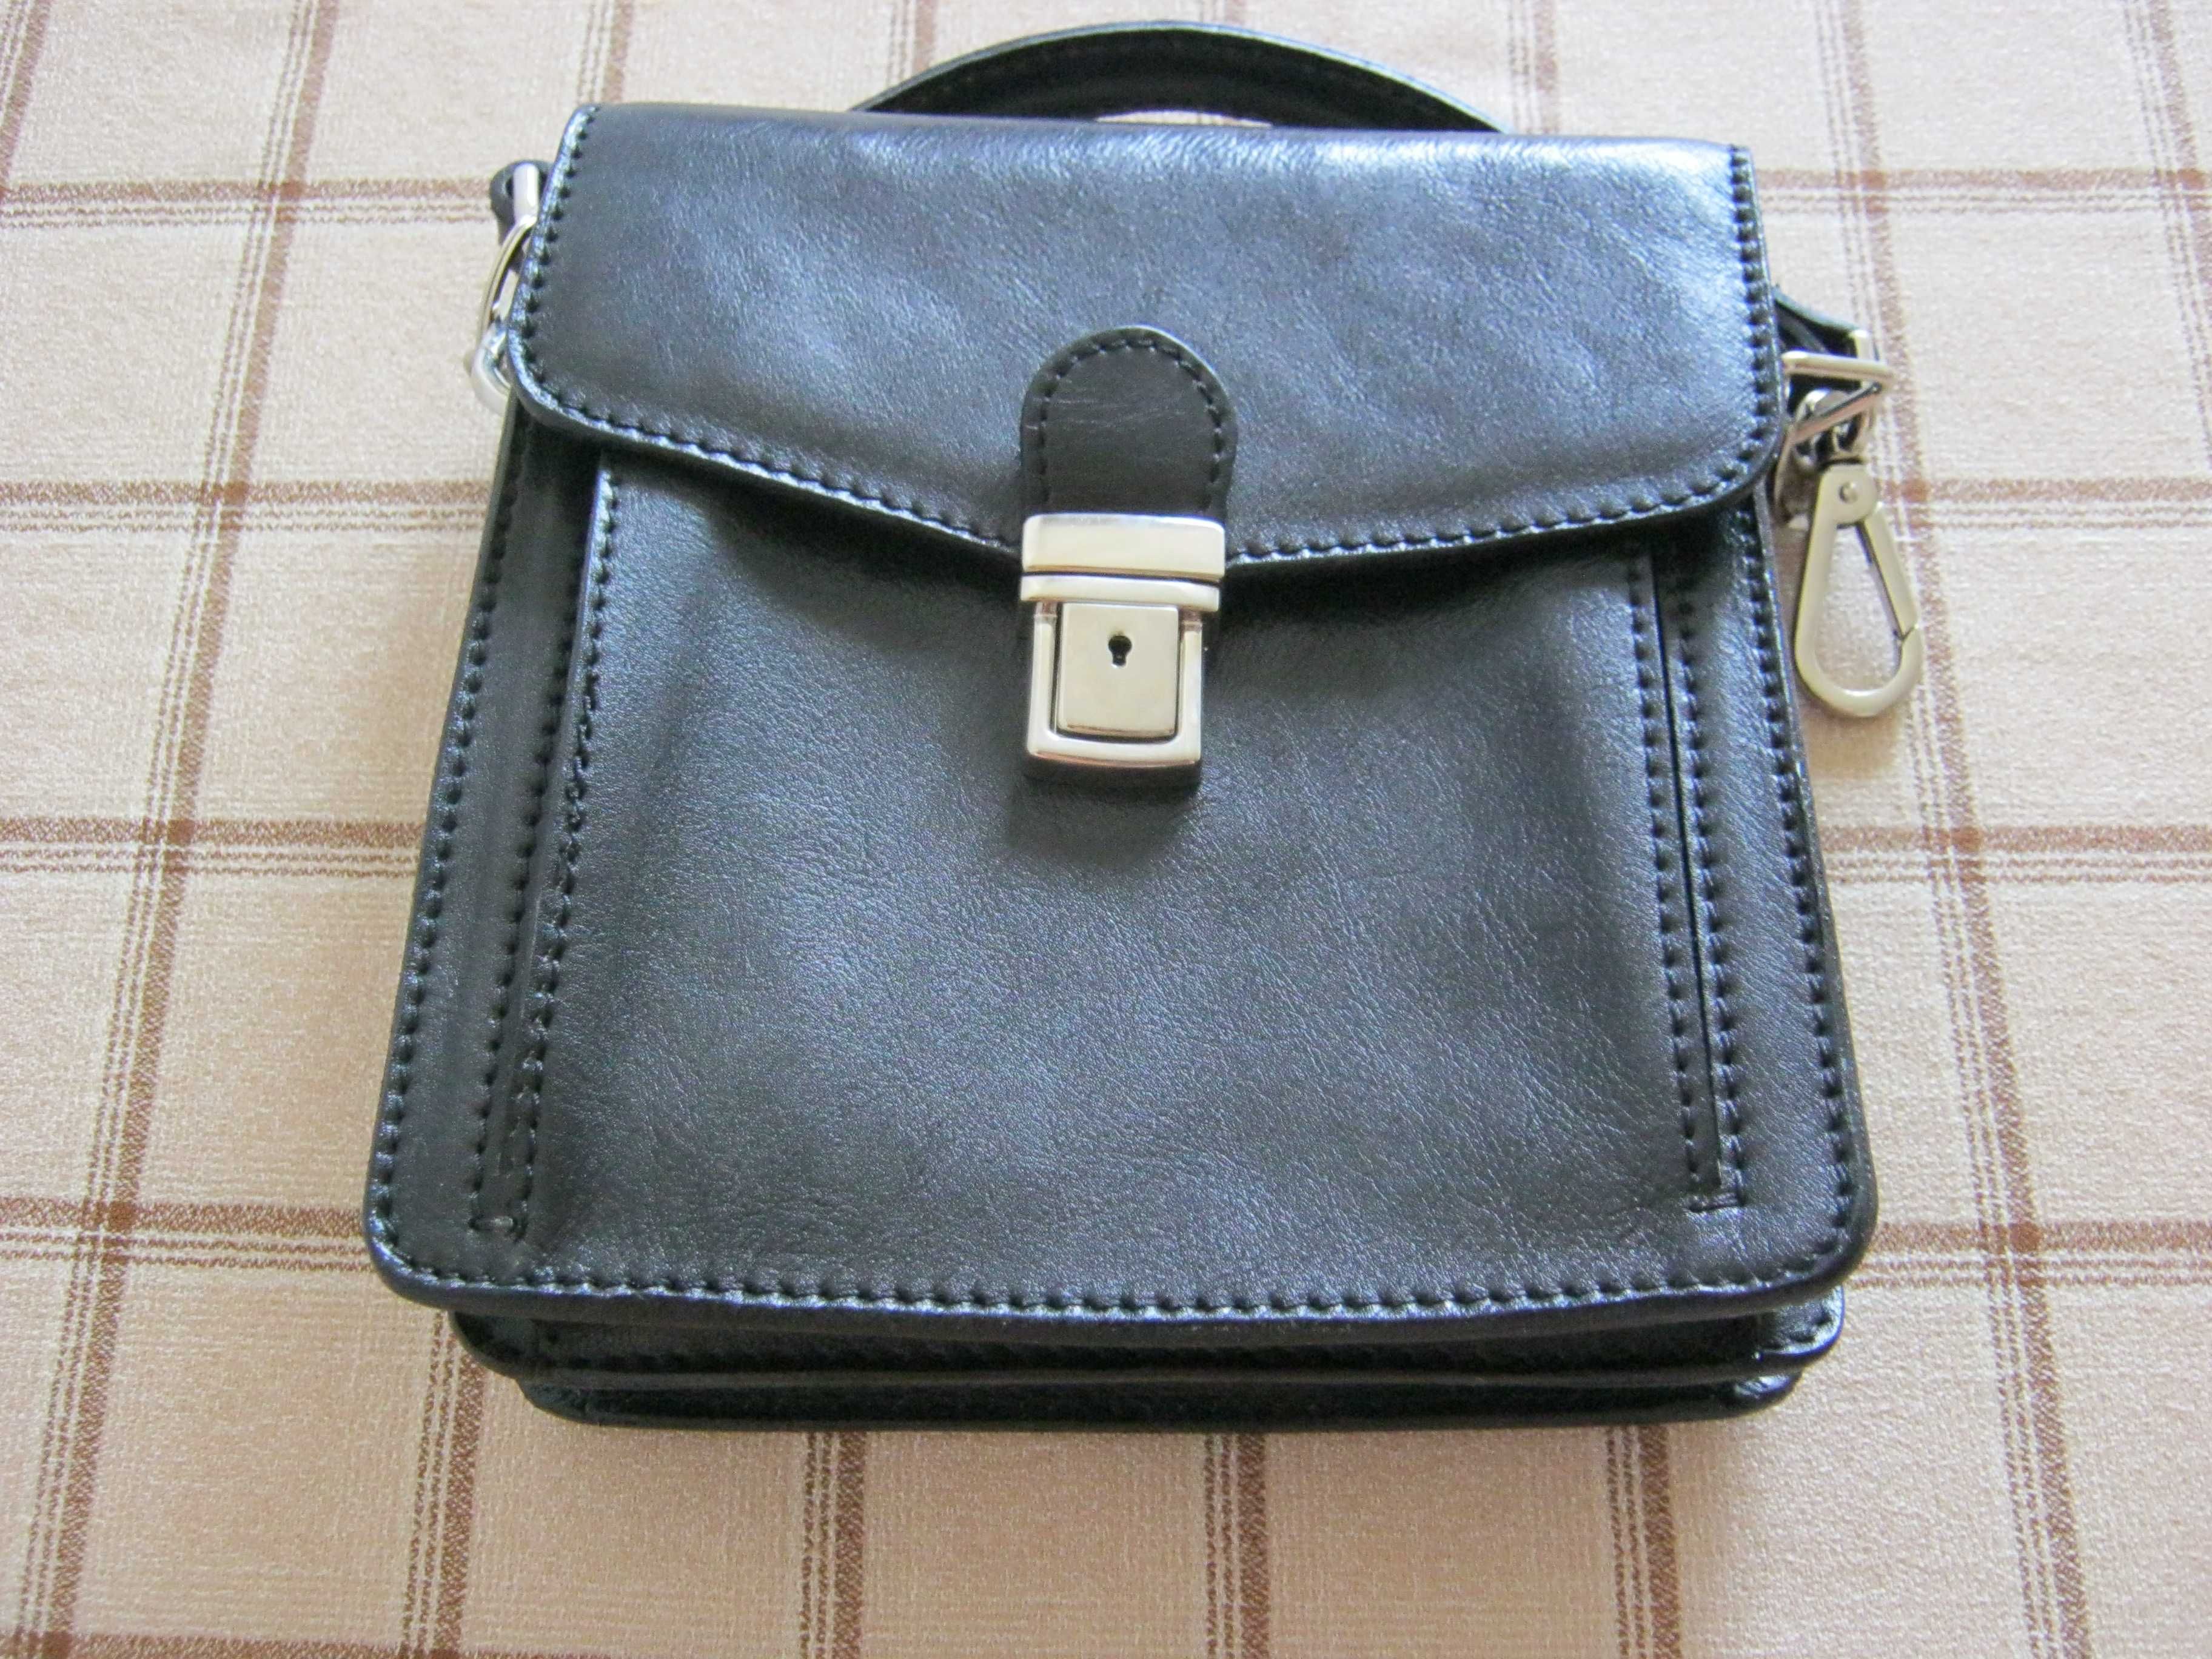 НОВЫЙ кожаный портфель ( барсетка сумка) СДЕЛАНО В ИТАЛИИ